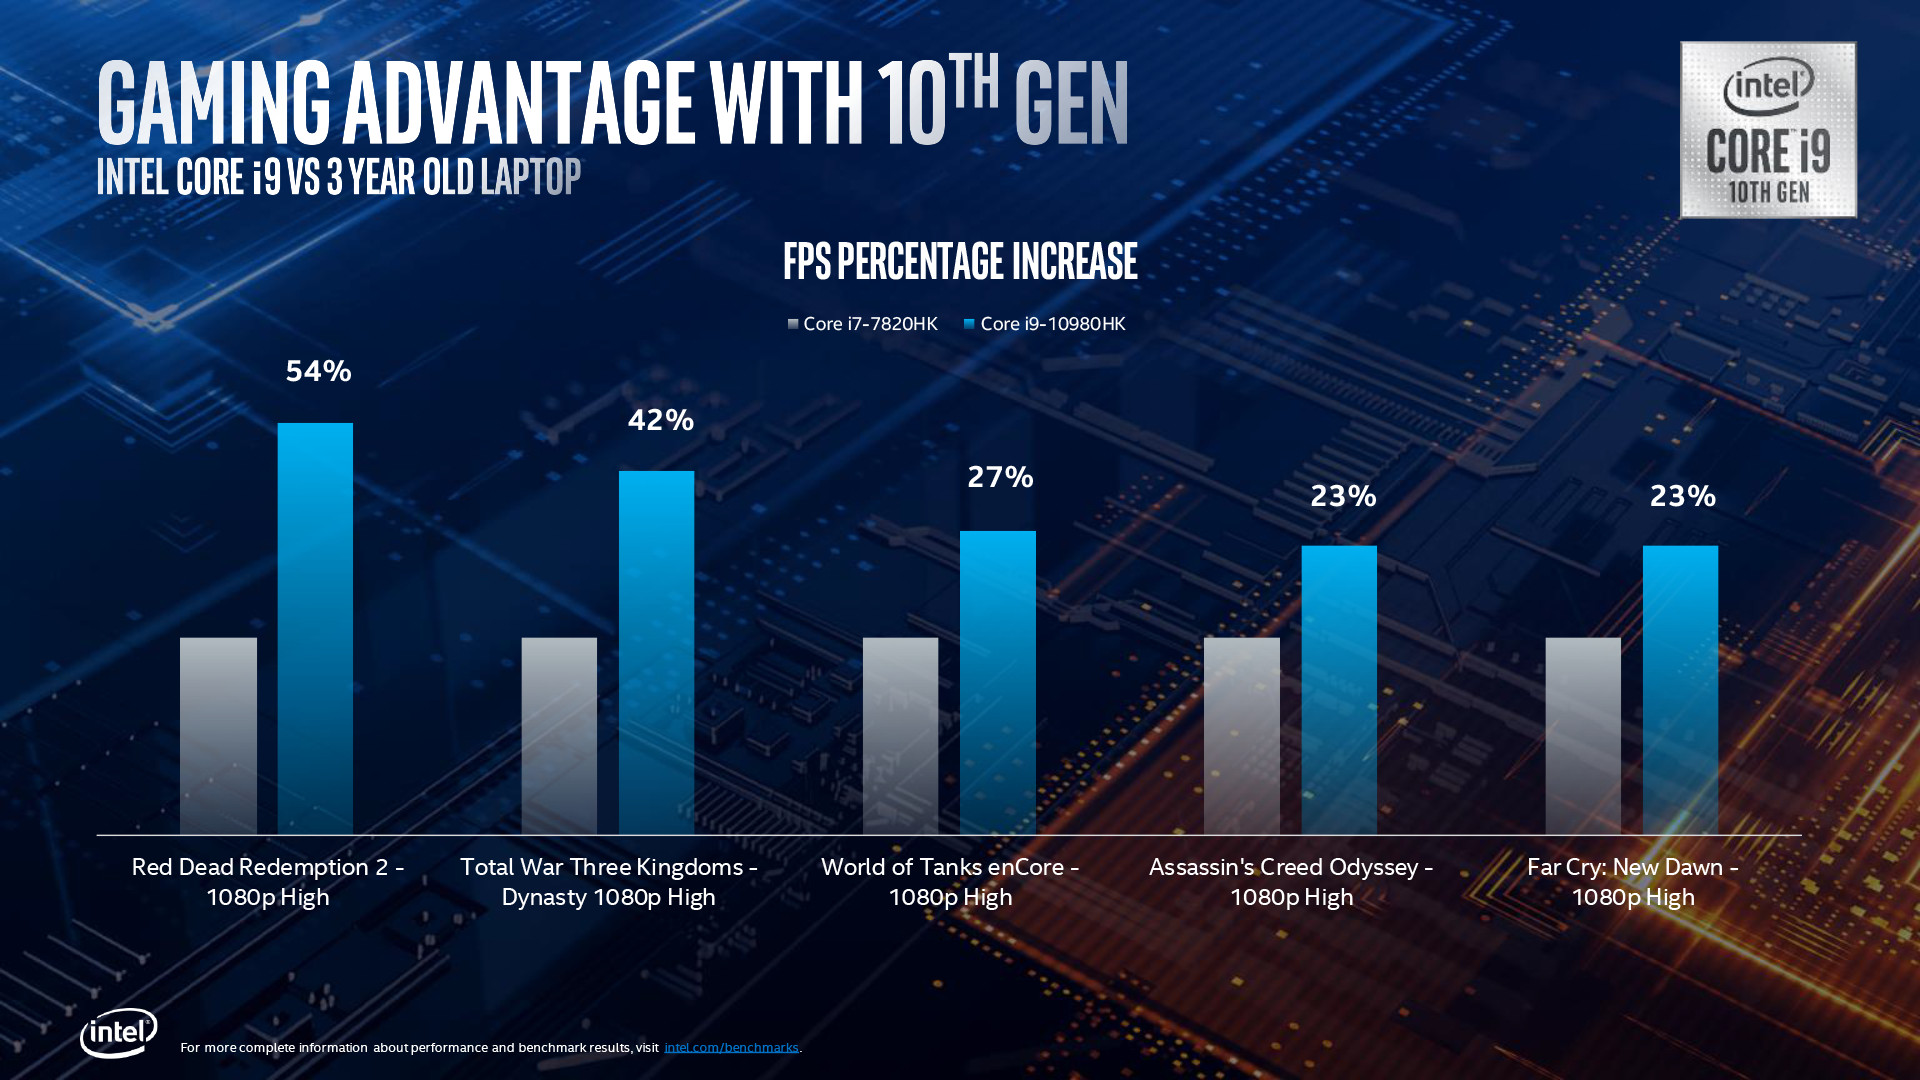 10th Gen Intel Core H Series Processor